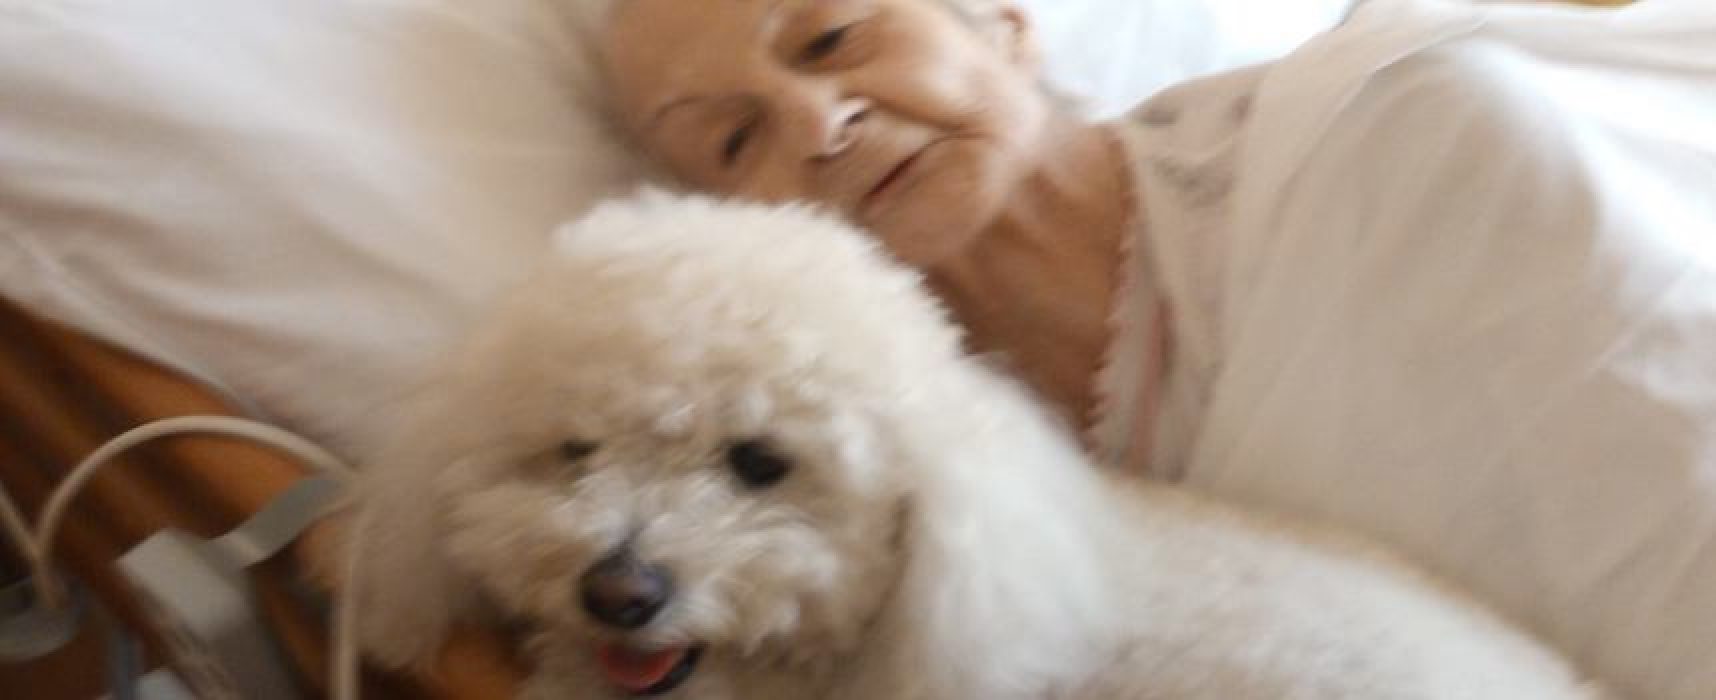 Hospice, 93enne accarezza il suo barboncino prima dell’addio: primo caso di “pet visiting” in Puglia